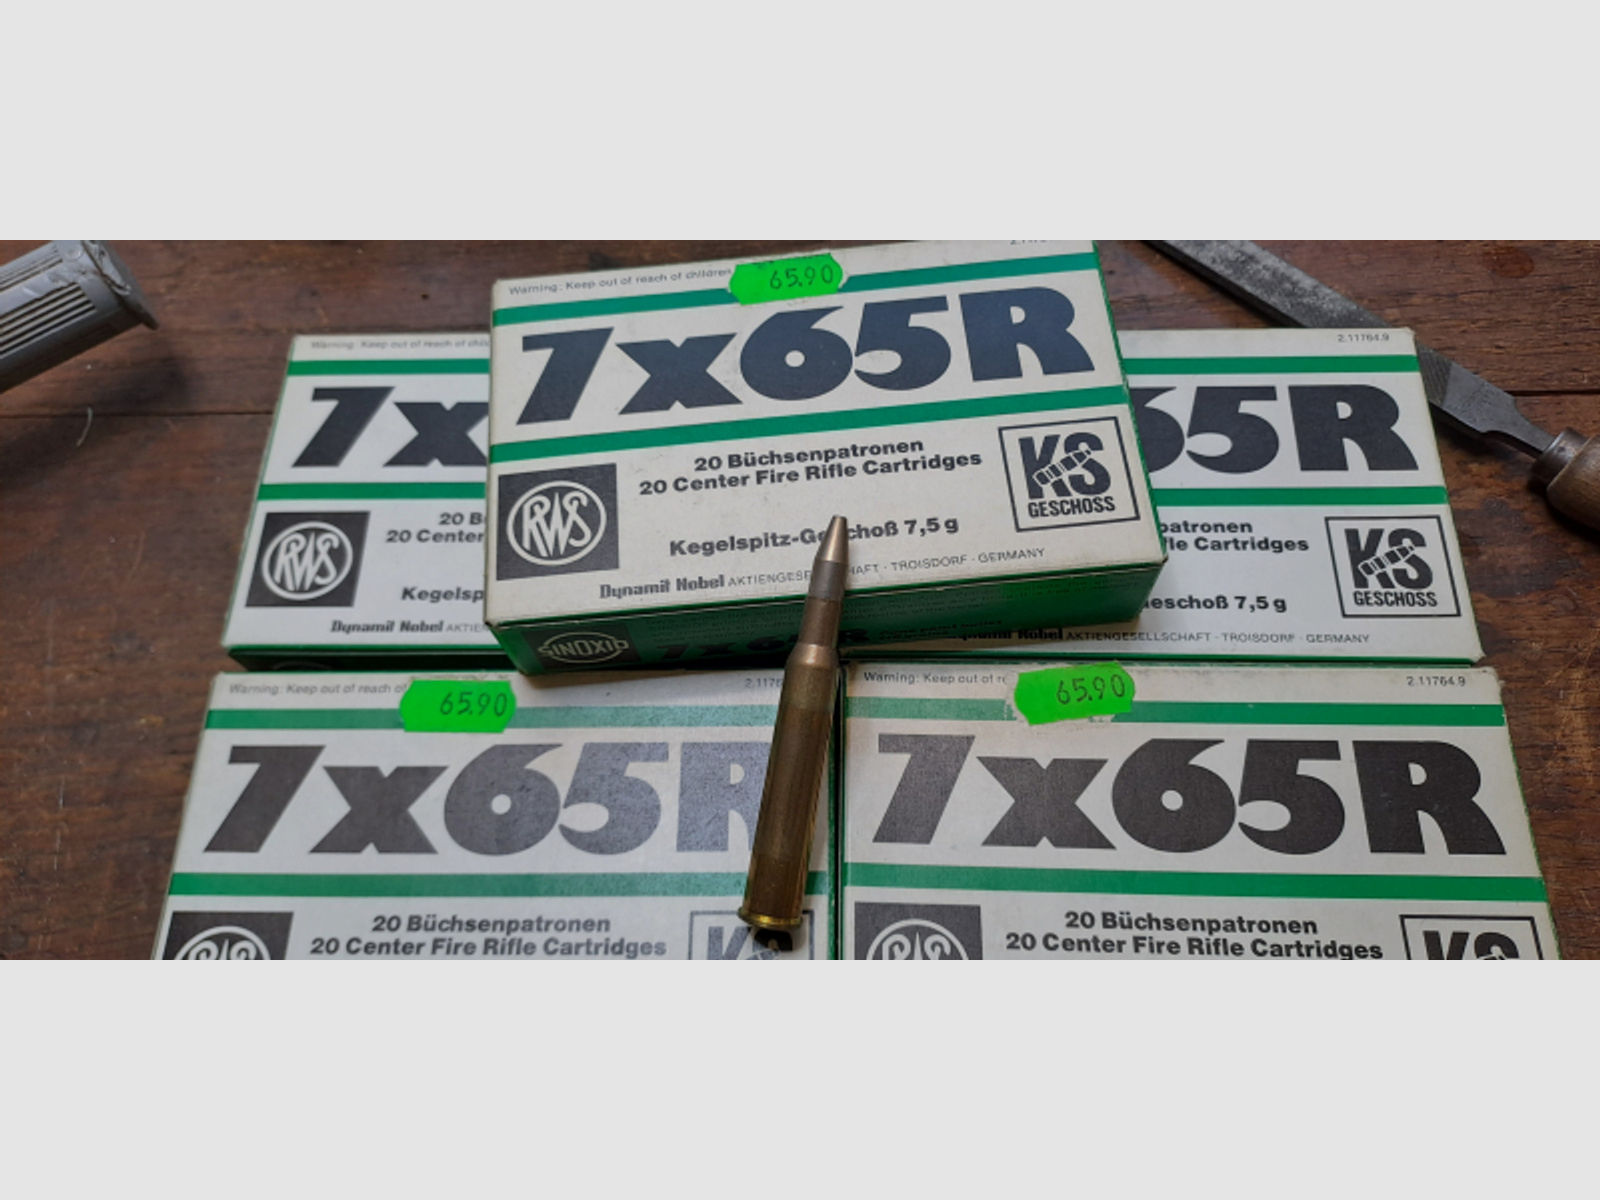 RWS 7x65R, Kegelspitz 7,5 gr, 5 Packungen, 100 Stück